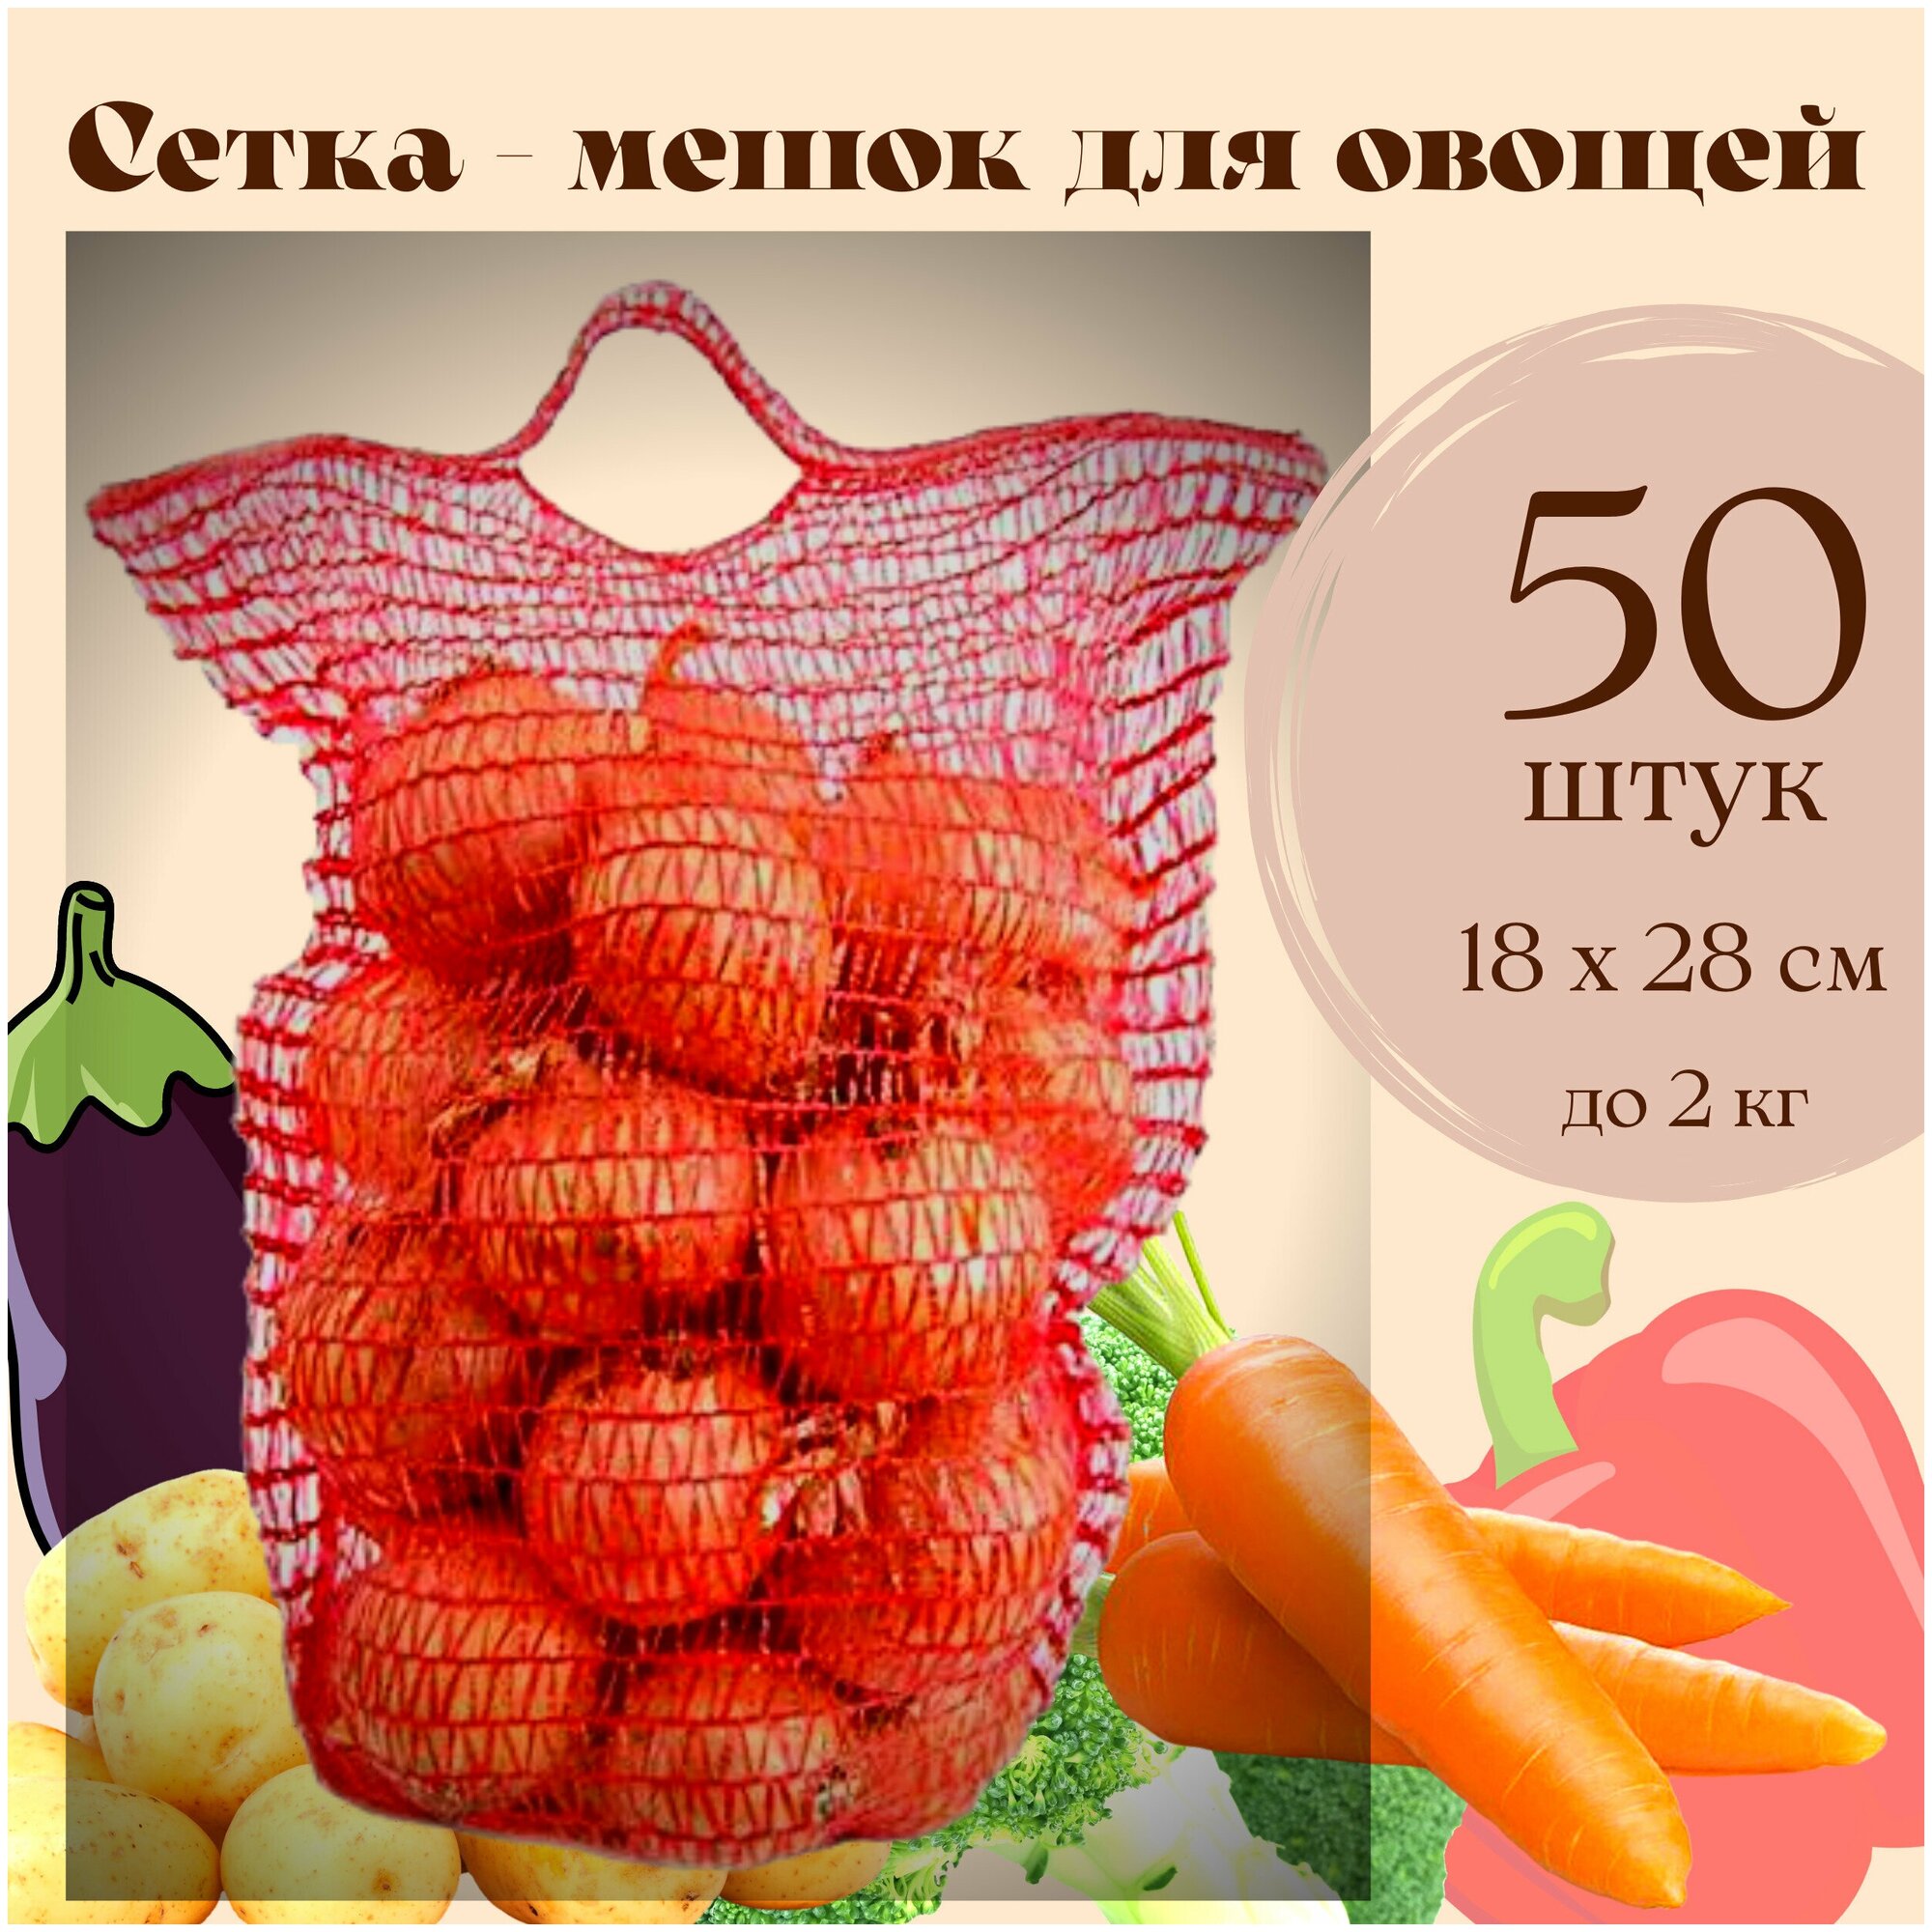 Сетка - Мешок для овощей до 2 кг, для урожая и хранения картошки, лука, моркови, яблок с завязками 18 х 28, 50 штук